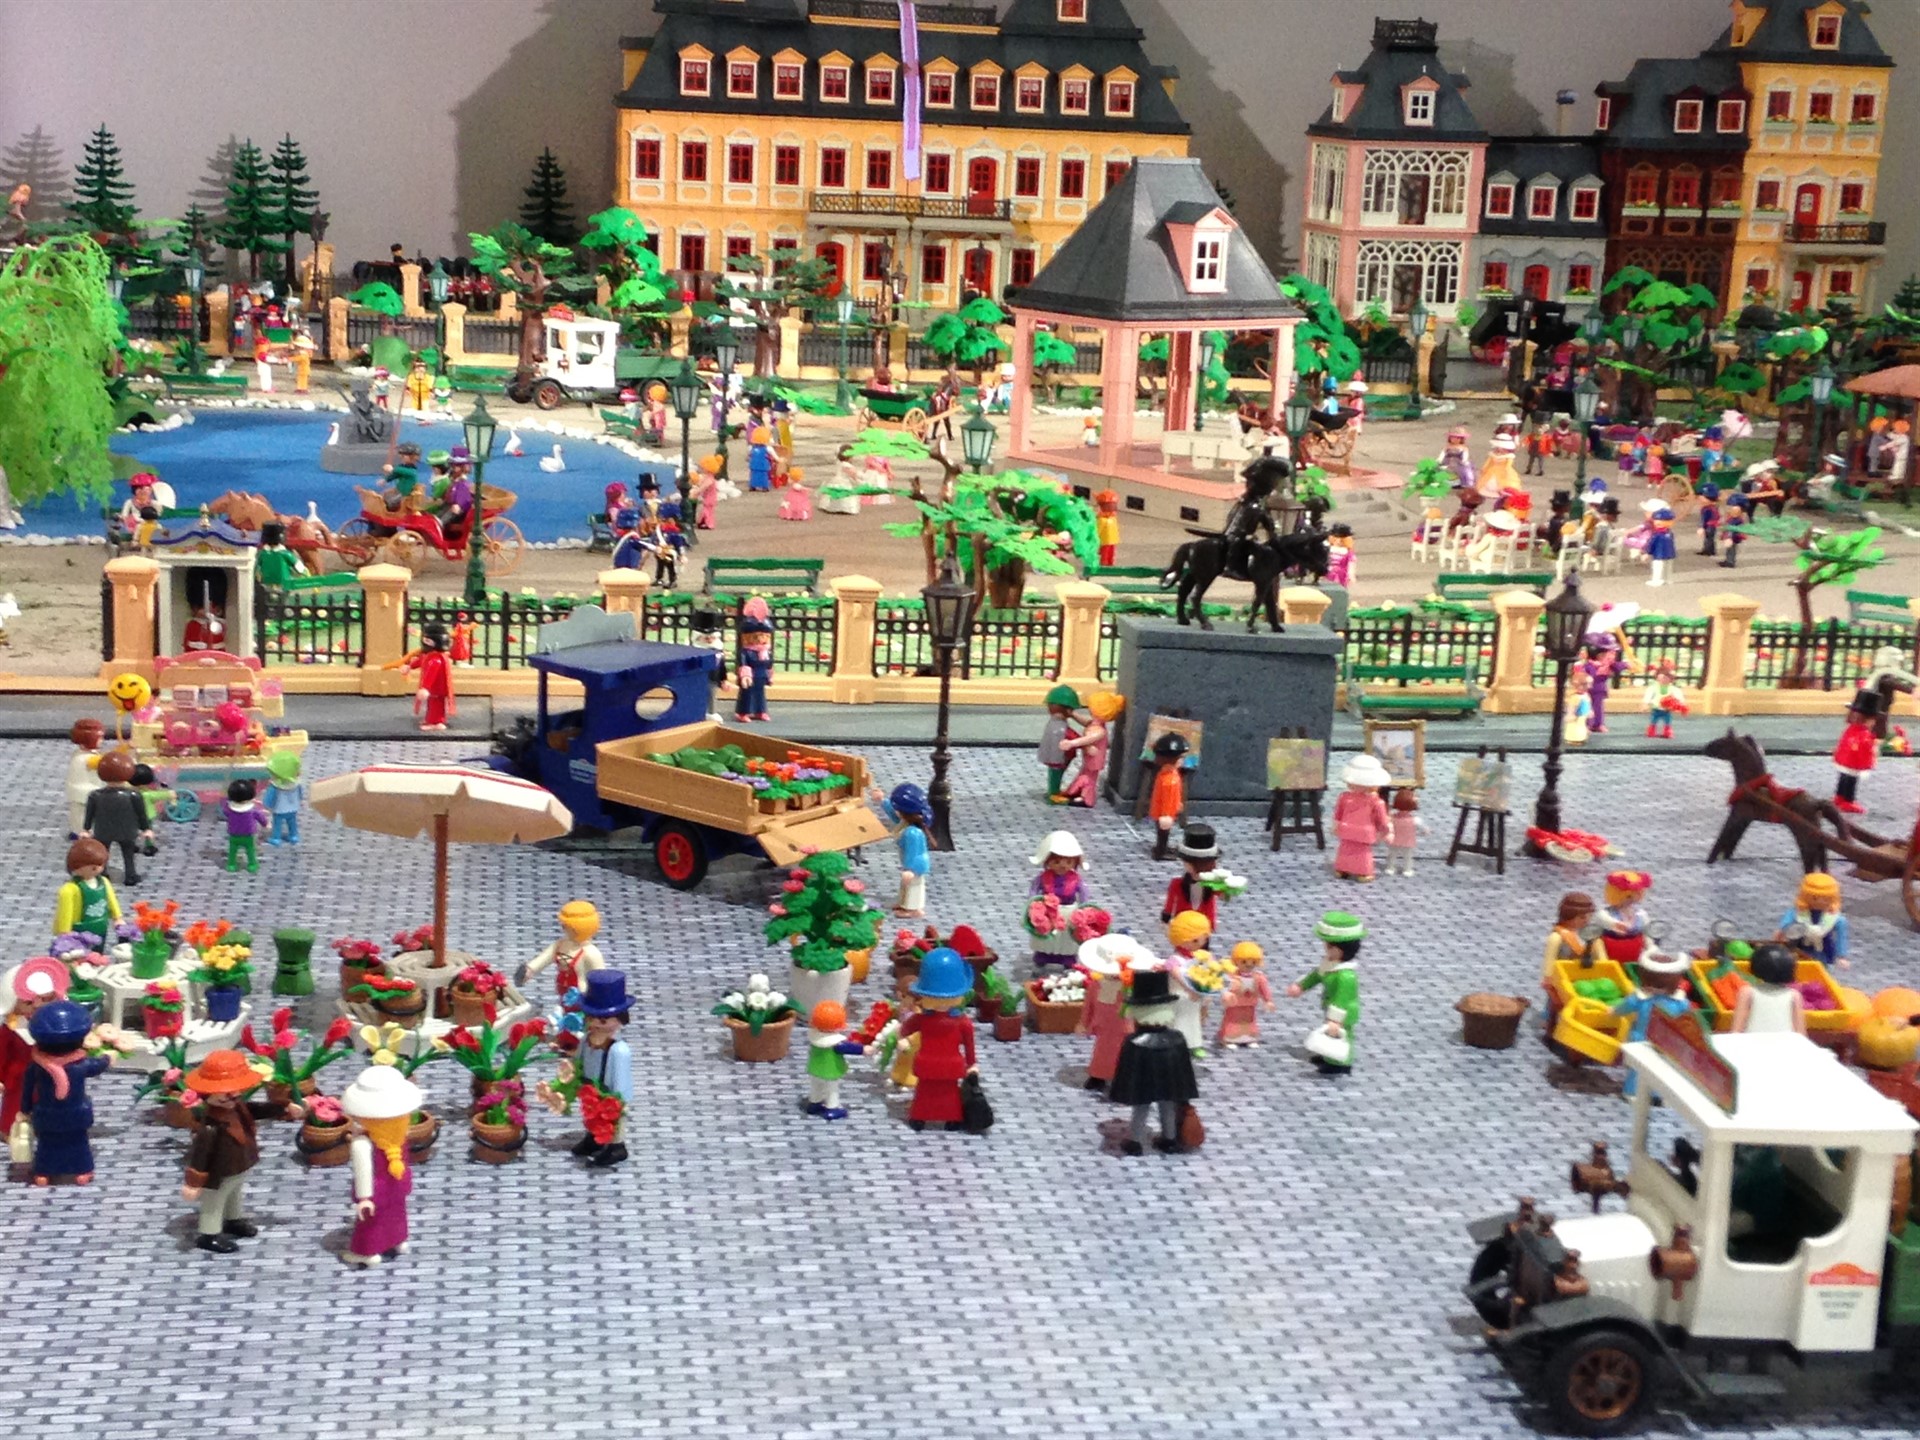 Excepcional Acostado calidad Se abre la exposición de Playmobil con más de 10.000 clicks en València -  OFFICIAL PRESS